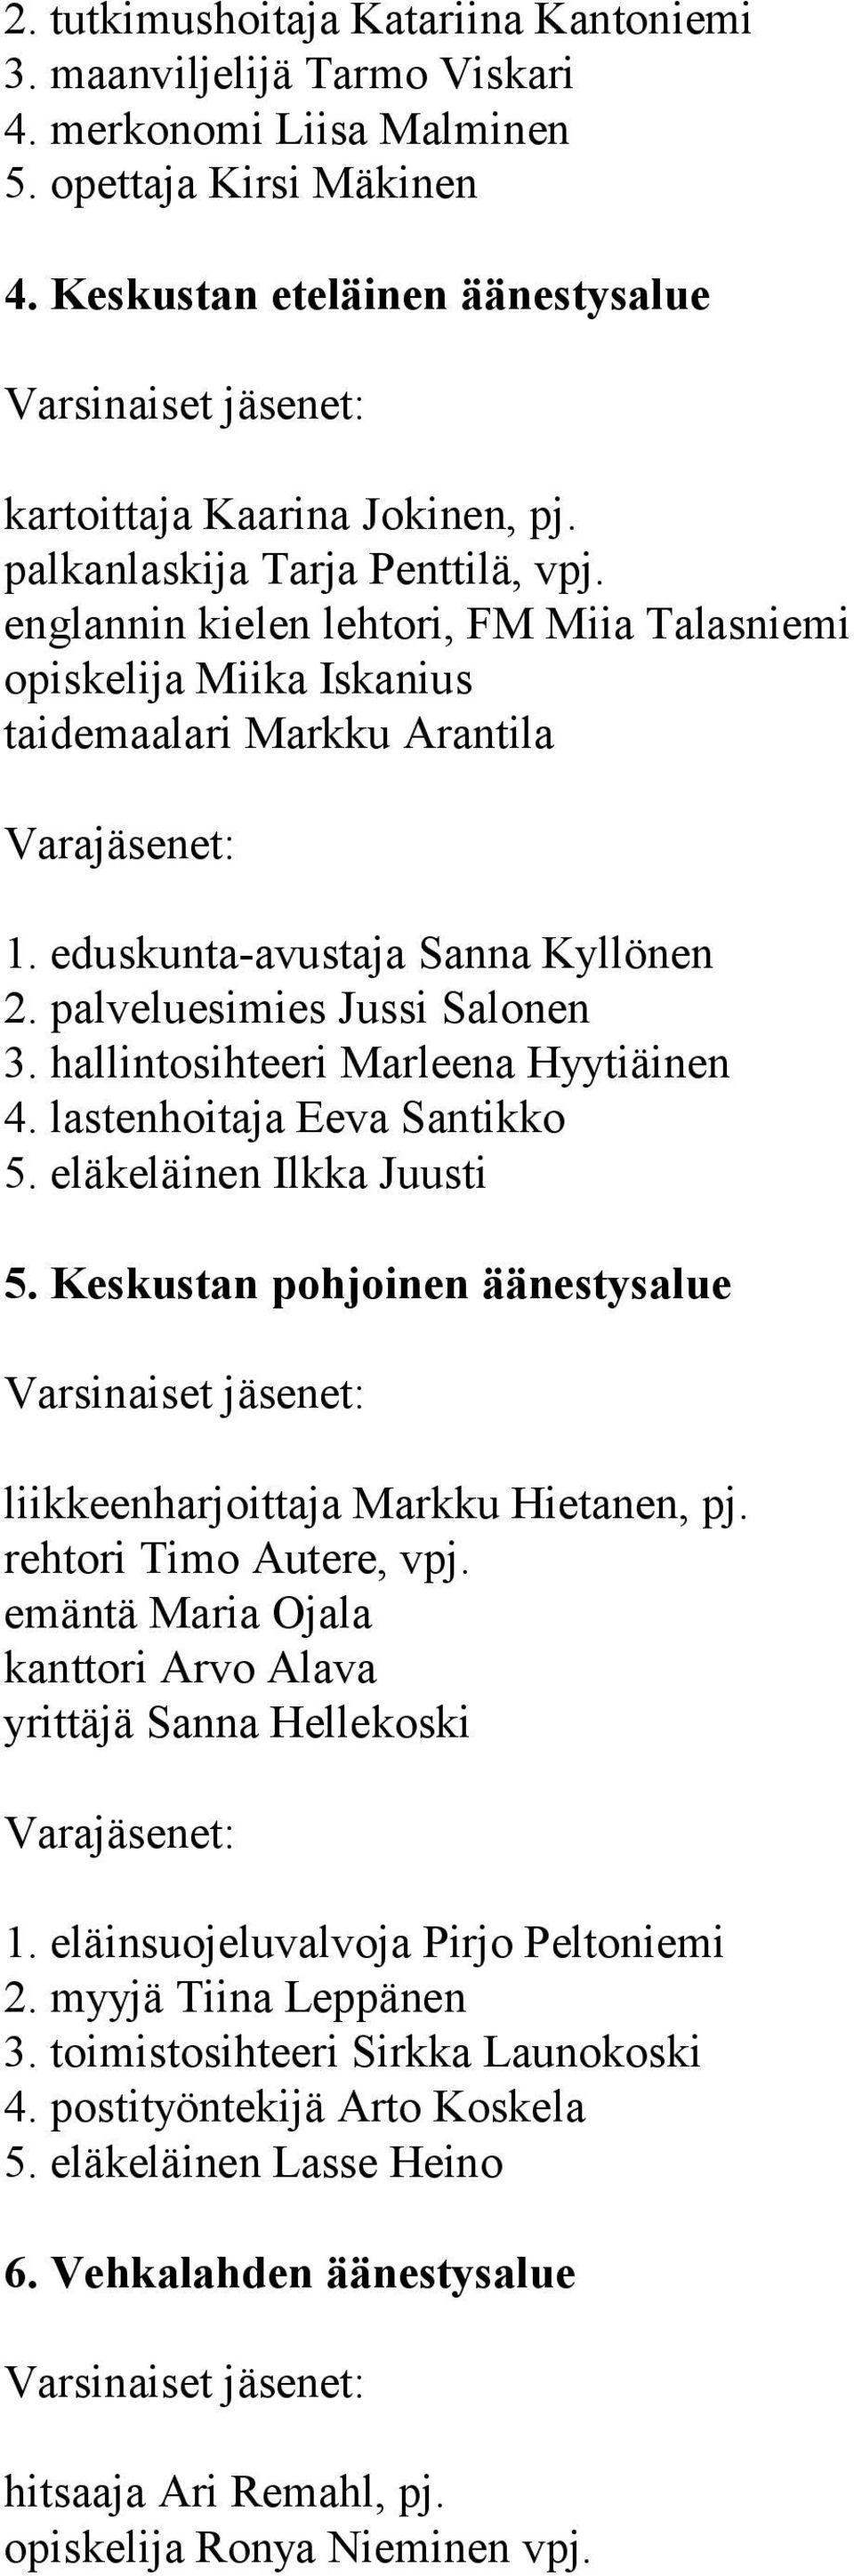 palveluesimies Jussi Salonen 3. hallintosihteeri Marleena Hyytiäinen 4. lastenhoitaja Eeva Santikko 5. eläkeläinen Ilkka Juusti 5.